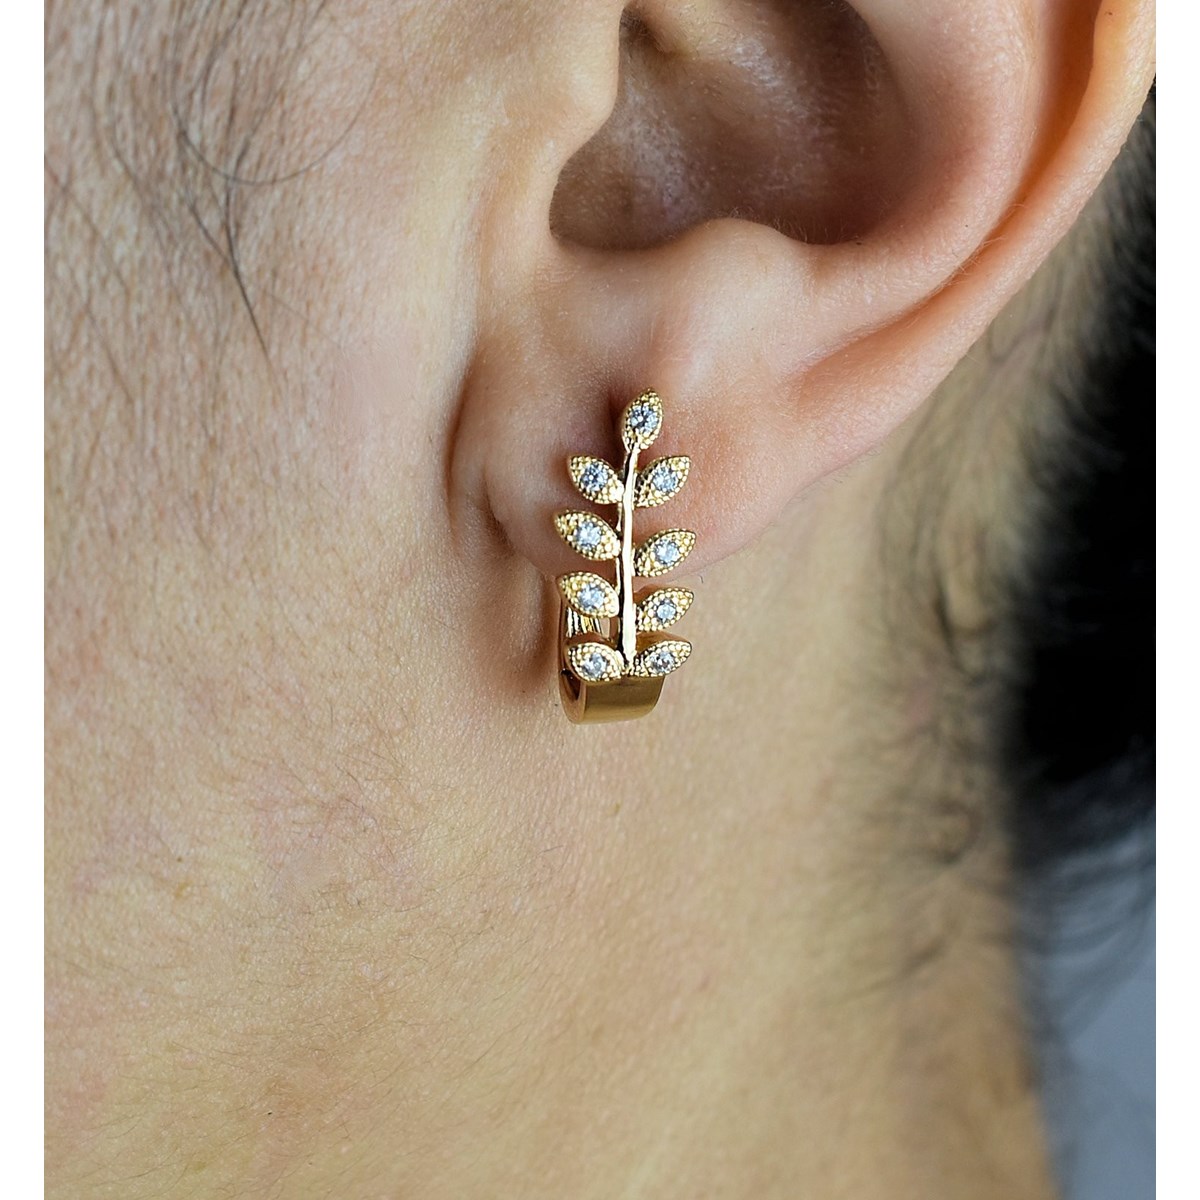 Boucles d'oreilles créole feuille de laurier serti d'oxydes de zirconium Plaqué or 750 3 microns - vue 4